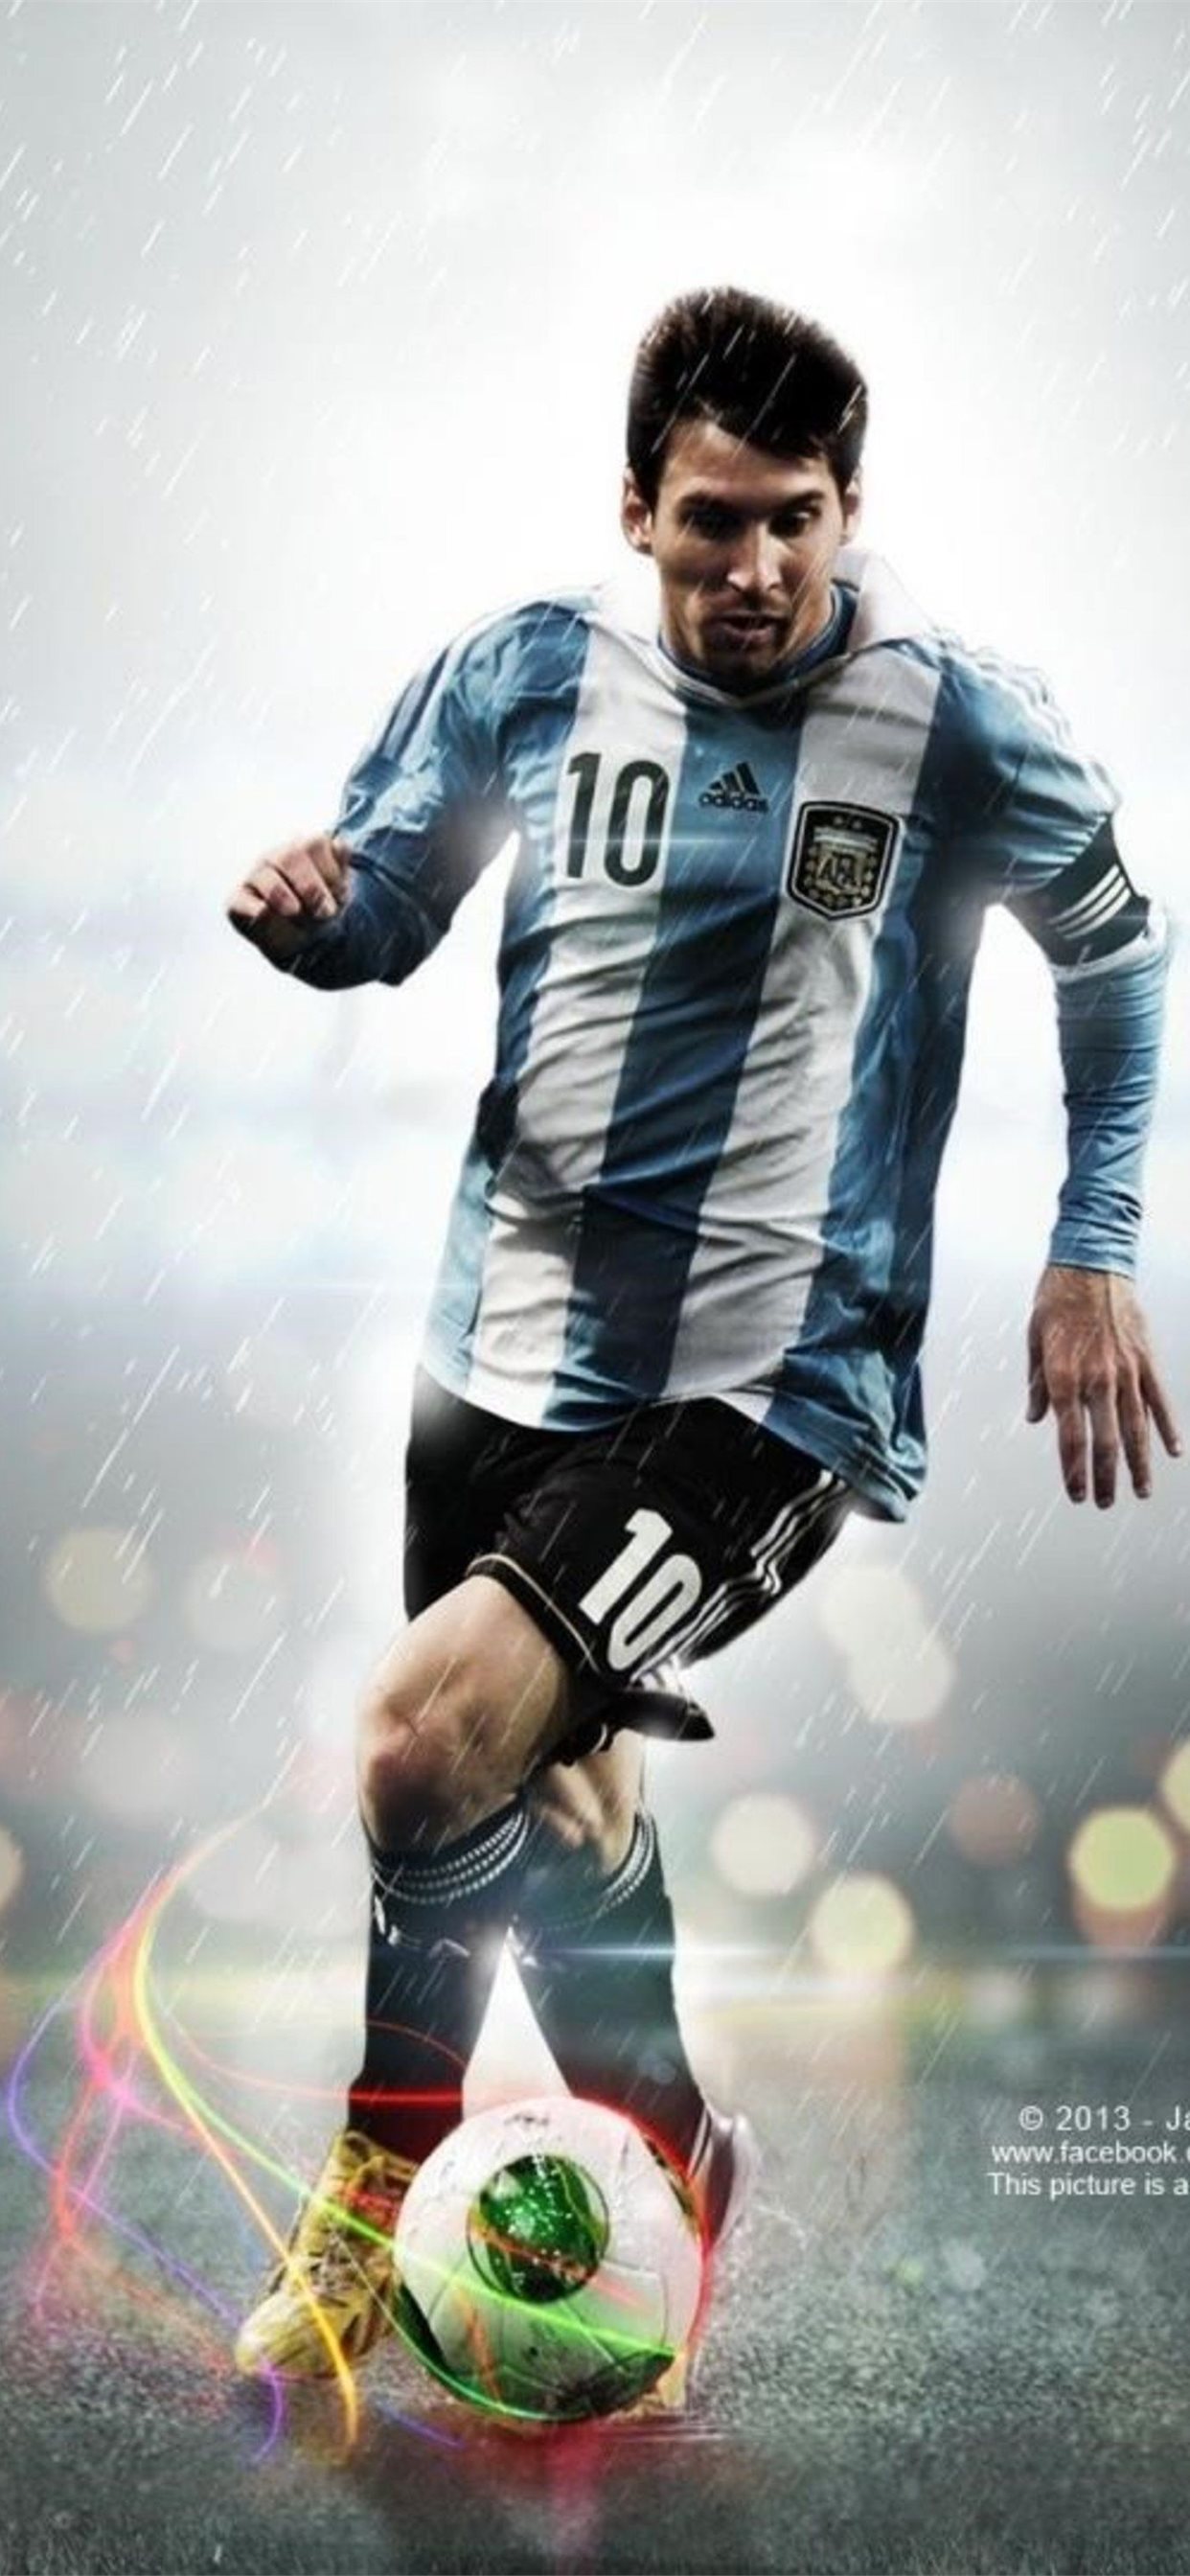 Với những hình nền về Lionel Messi sẽ khiến bạn mãn nhãn với vẻ đẹp trẻ trung và sự xuất sắc trong sân cỏ của siêu sao bóng đá này.